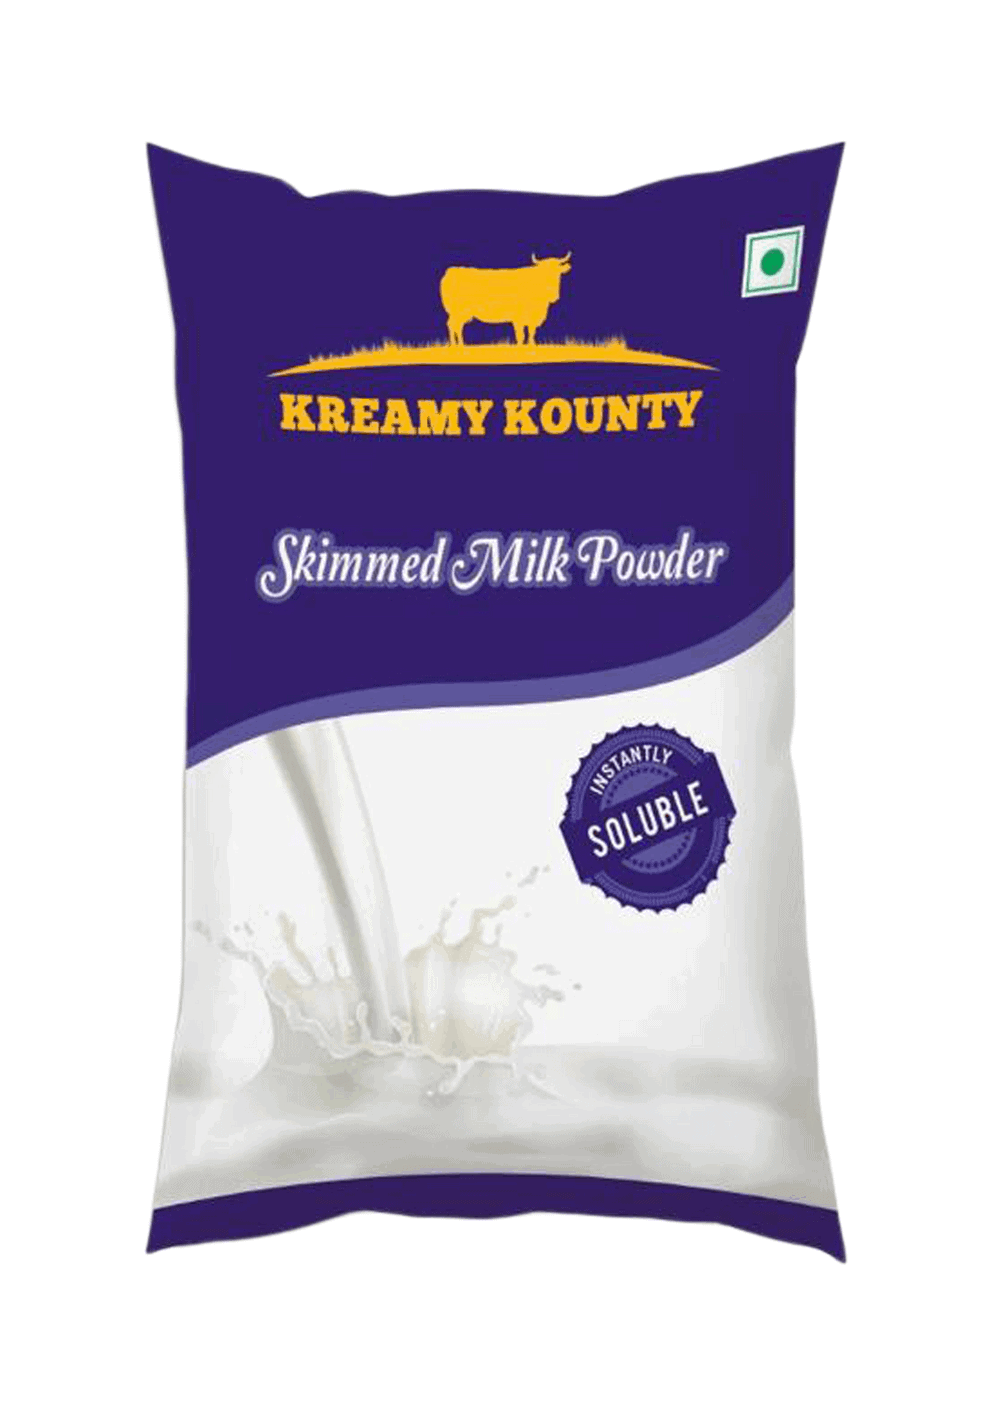 Skimmed Milk Powder 34%